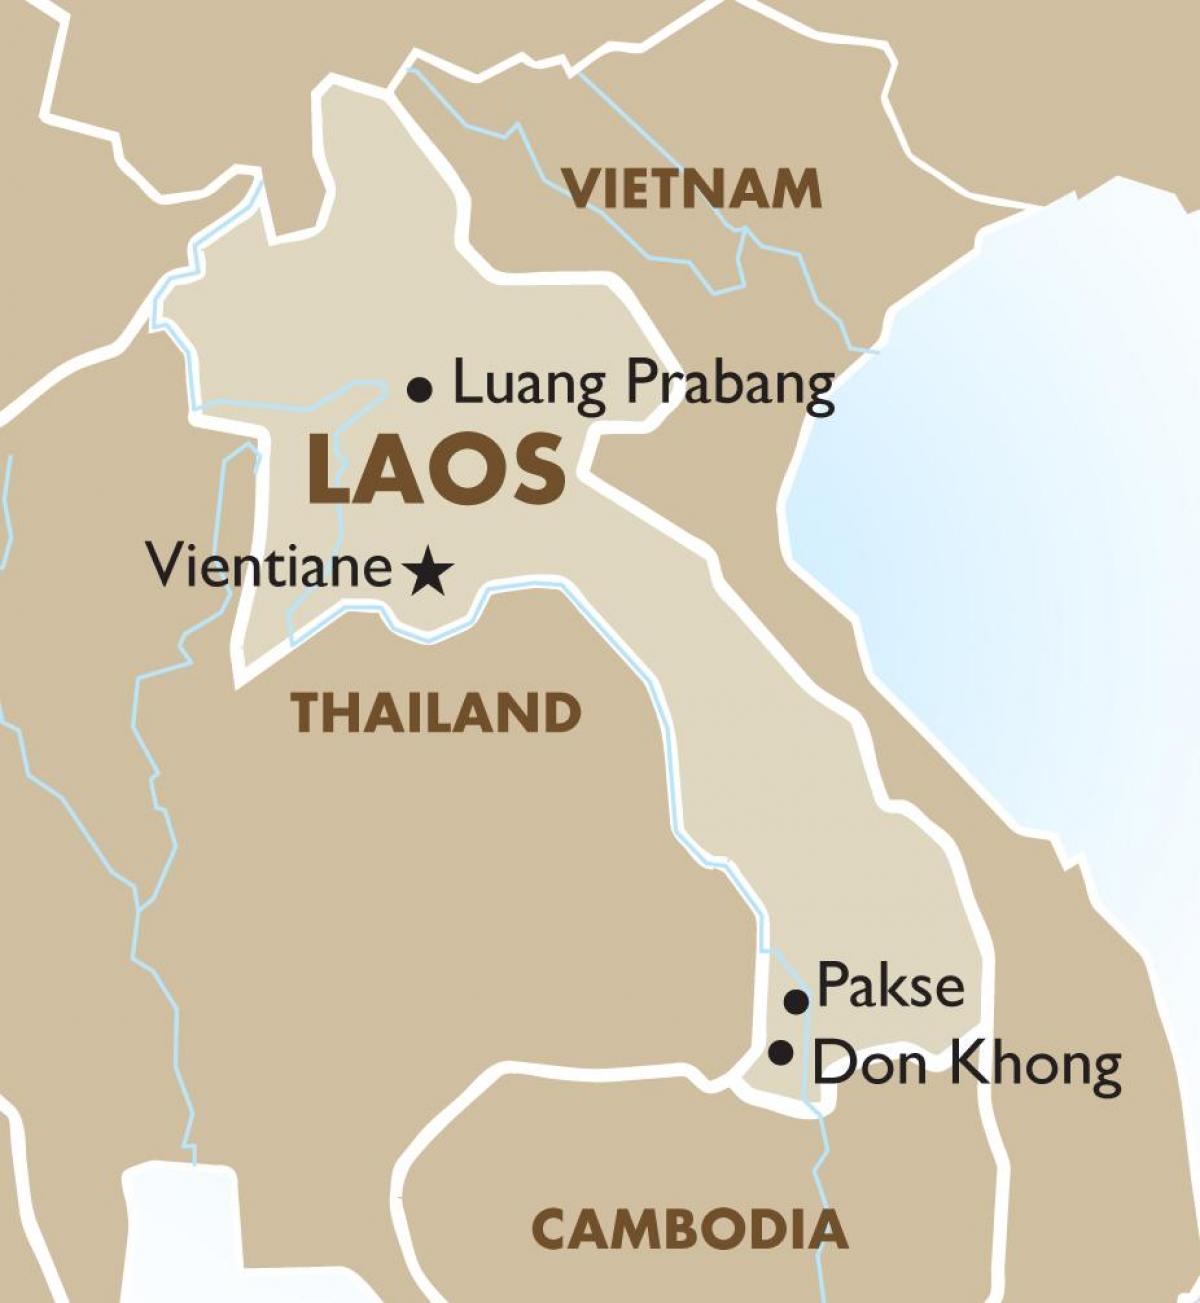 Mapa da capital do laos 